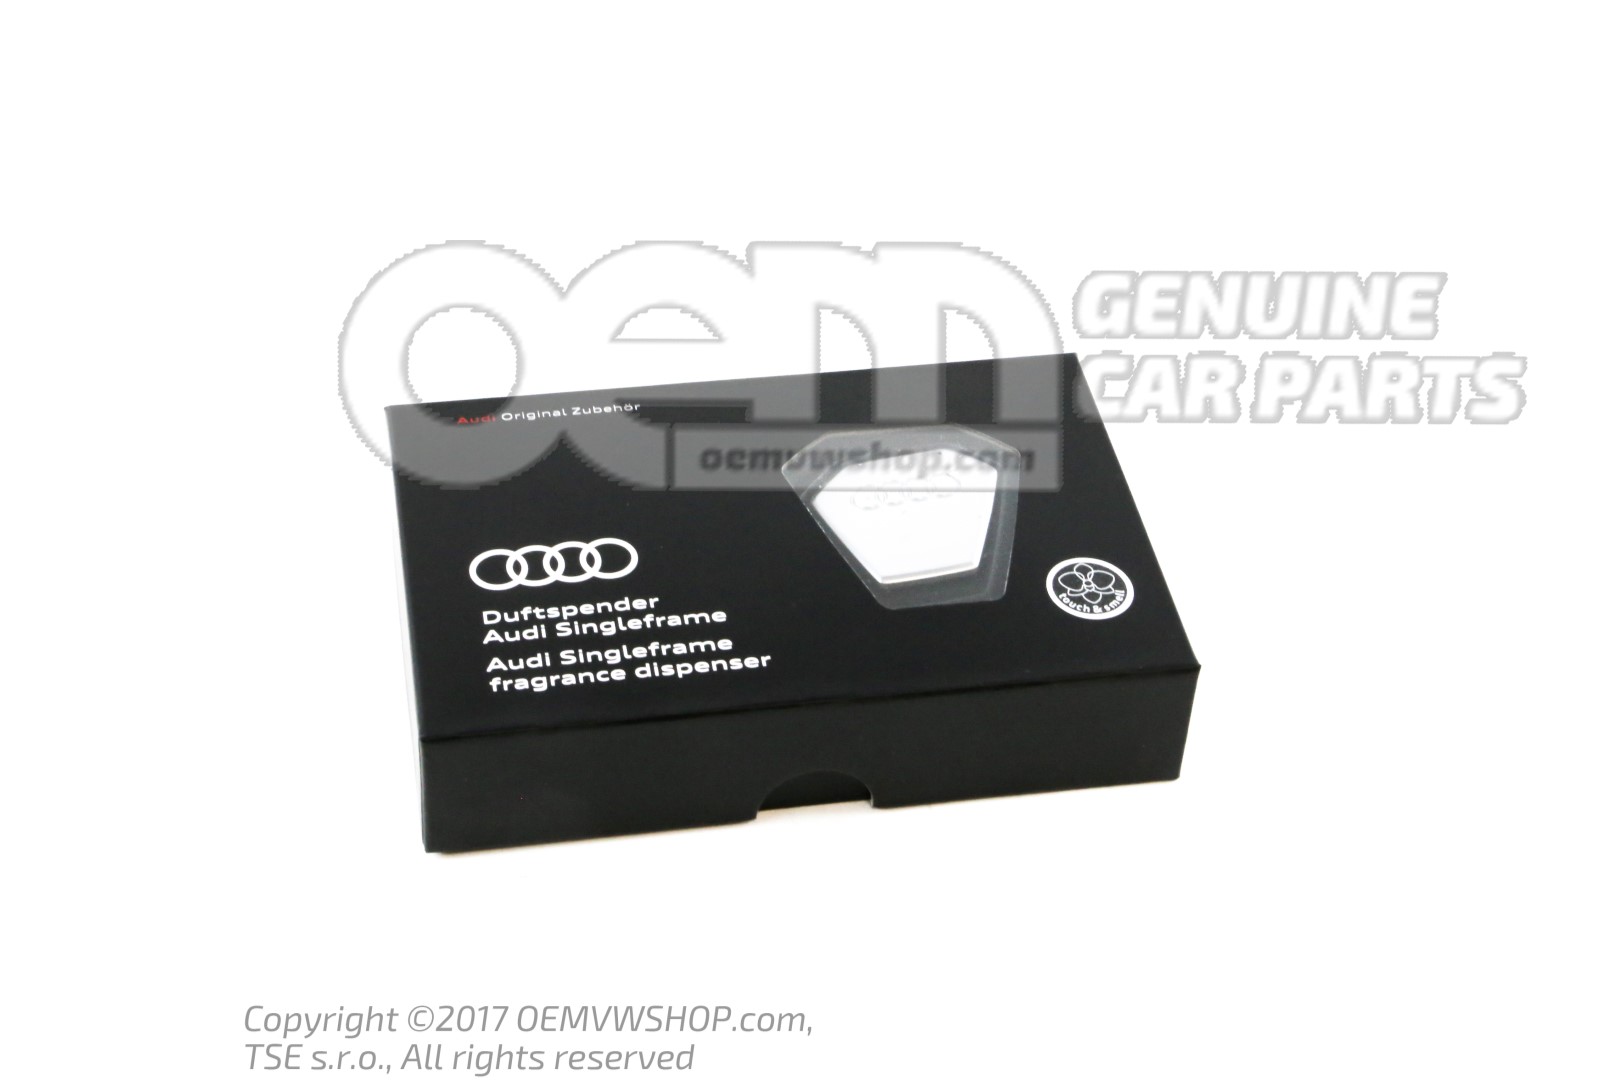 Audi singleframe aroma dispens scent oriental 80A087009